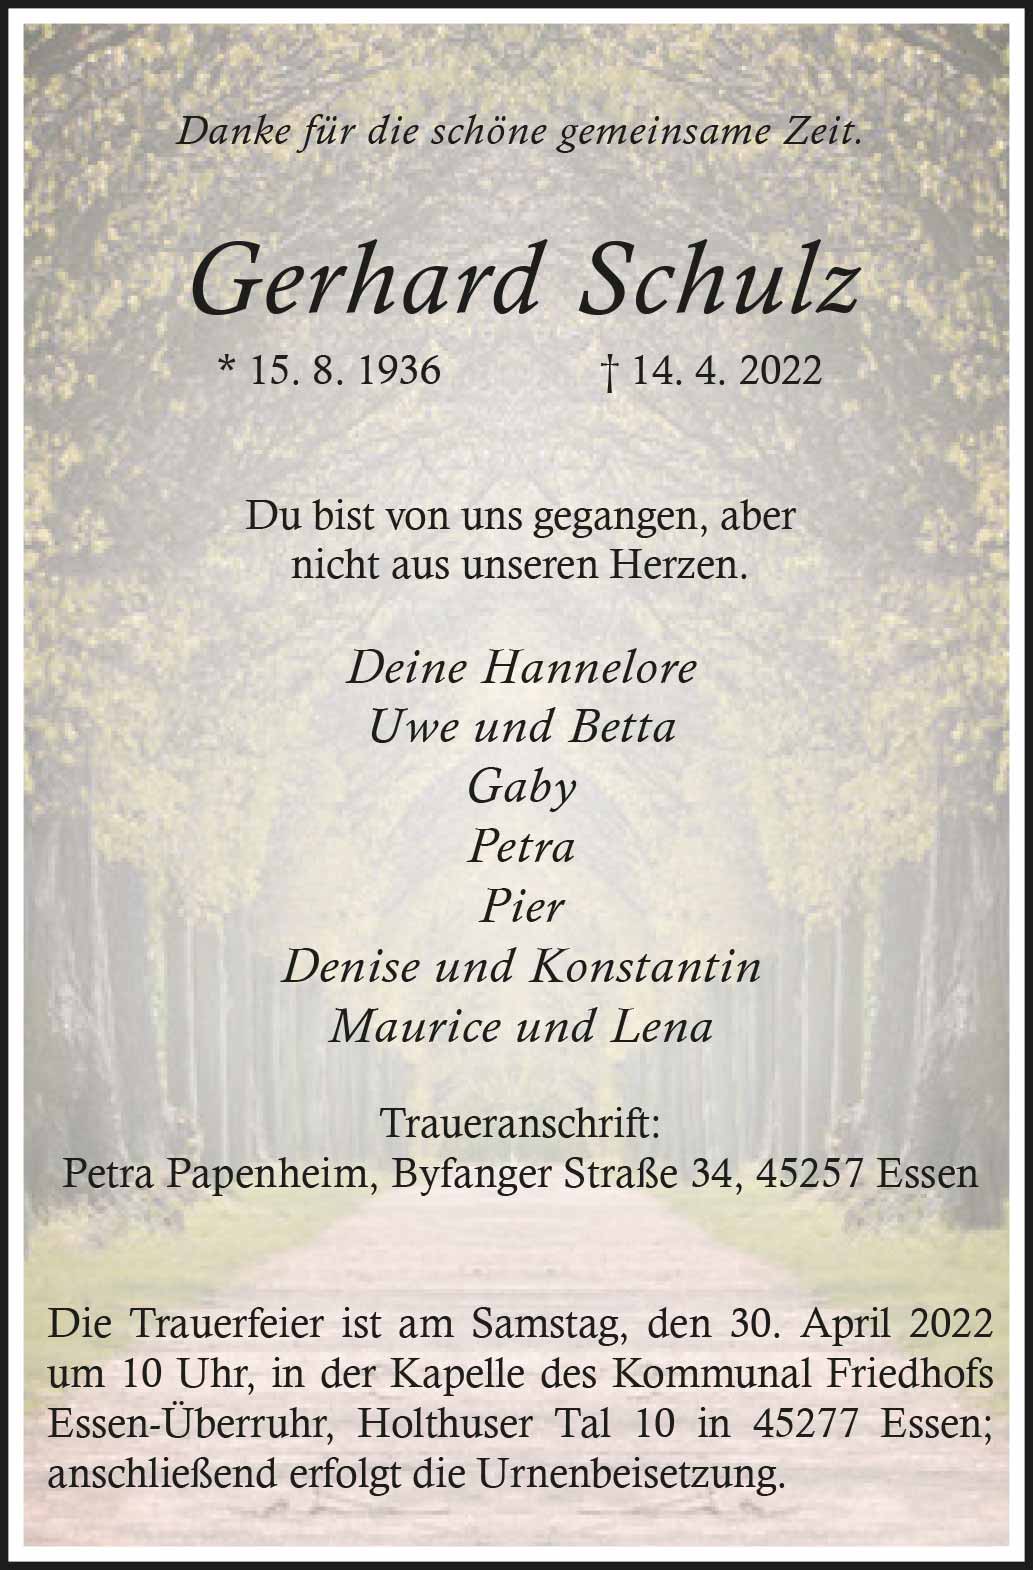 Gerhard Schulz † 14. 4. 2022